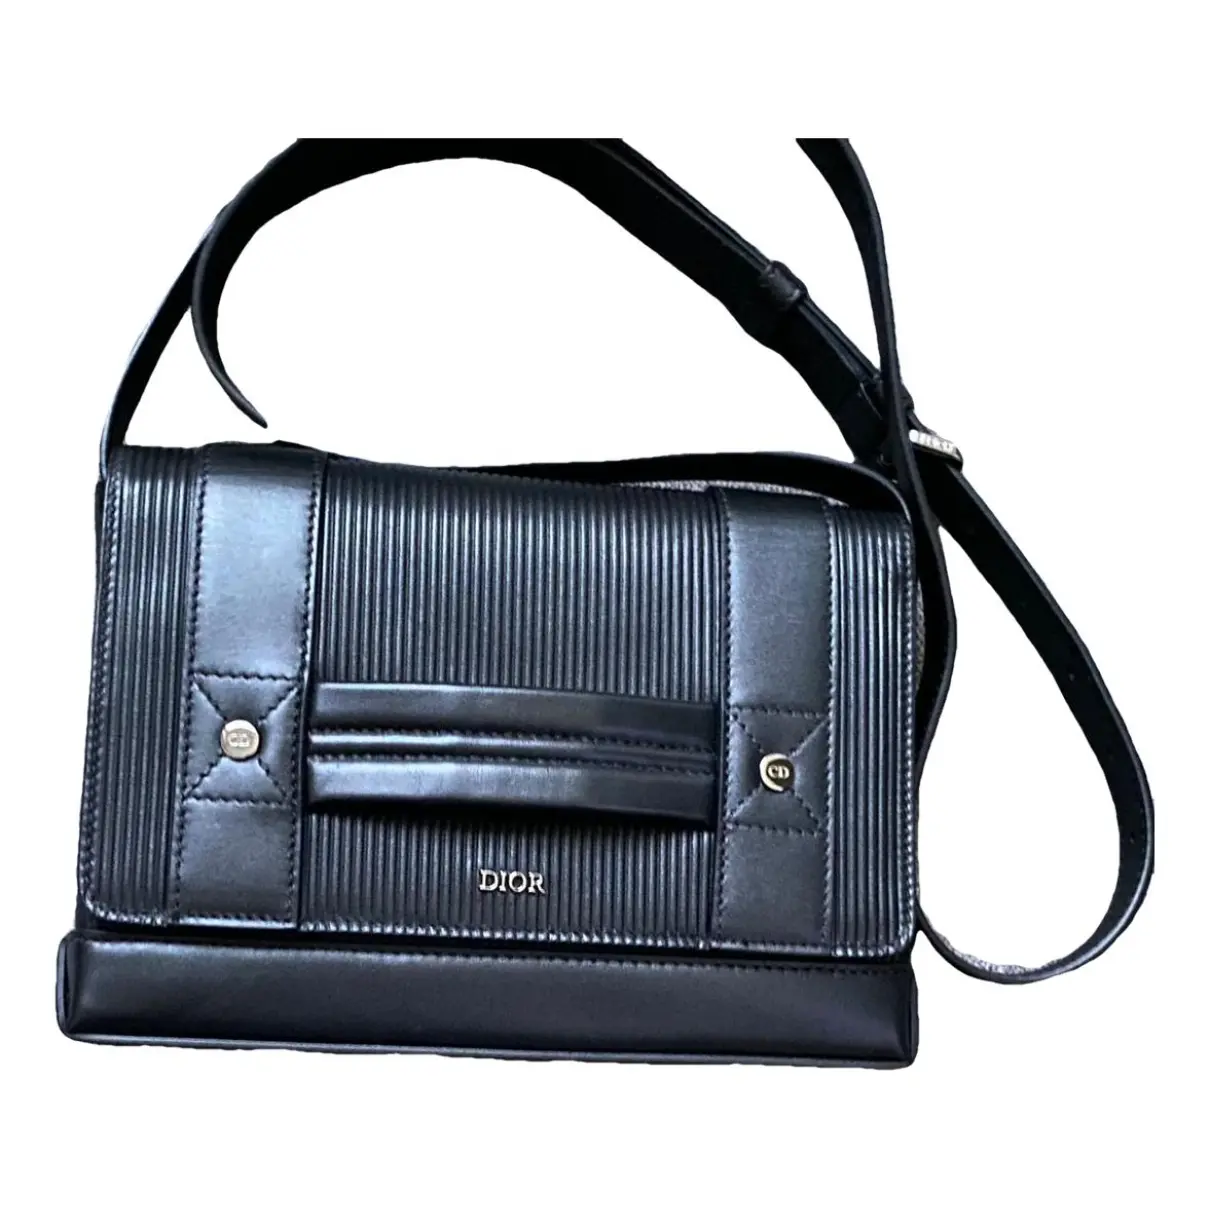 Leather satchel